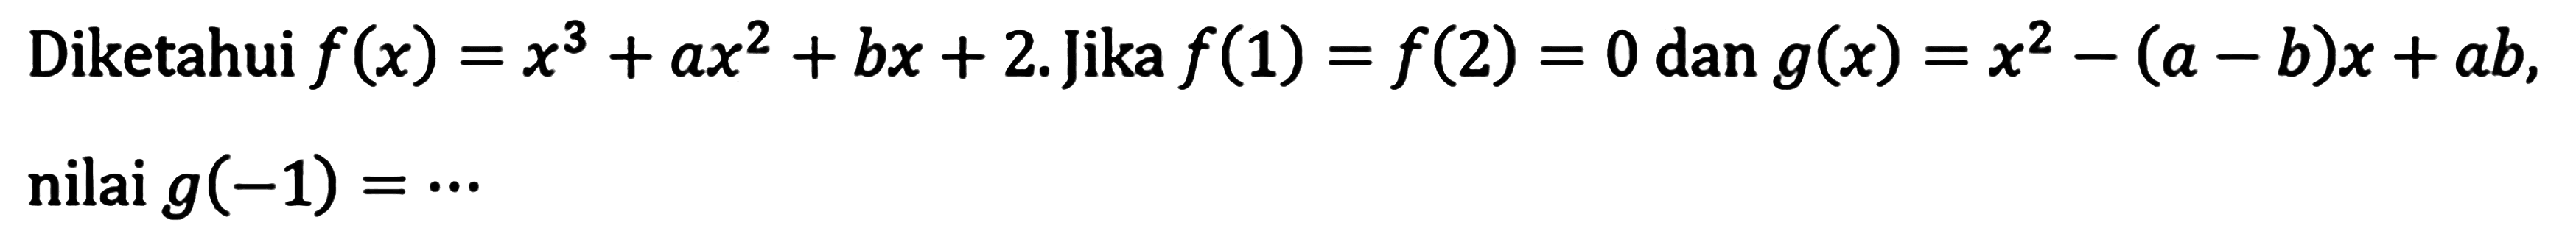 Diketahui f(x)=x^3+ax^2+bx+2. Jika f(1)=f(2)=0 dan g(x)=x^2-(a-b)x+ab, nilai g(-1)= ...